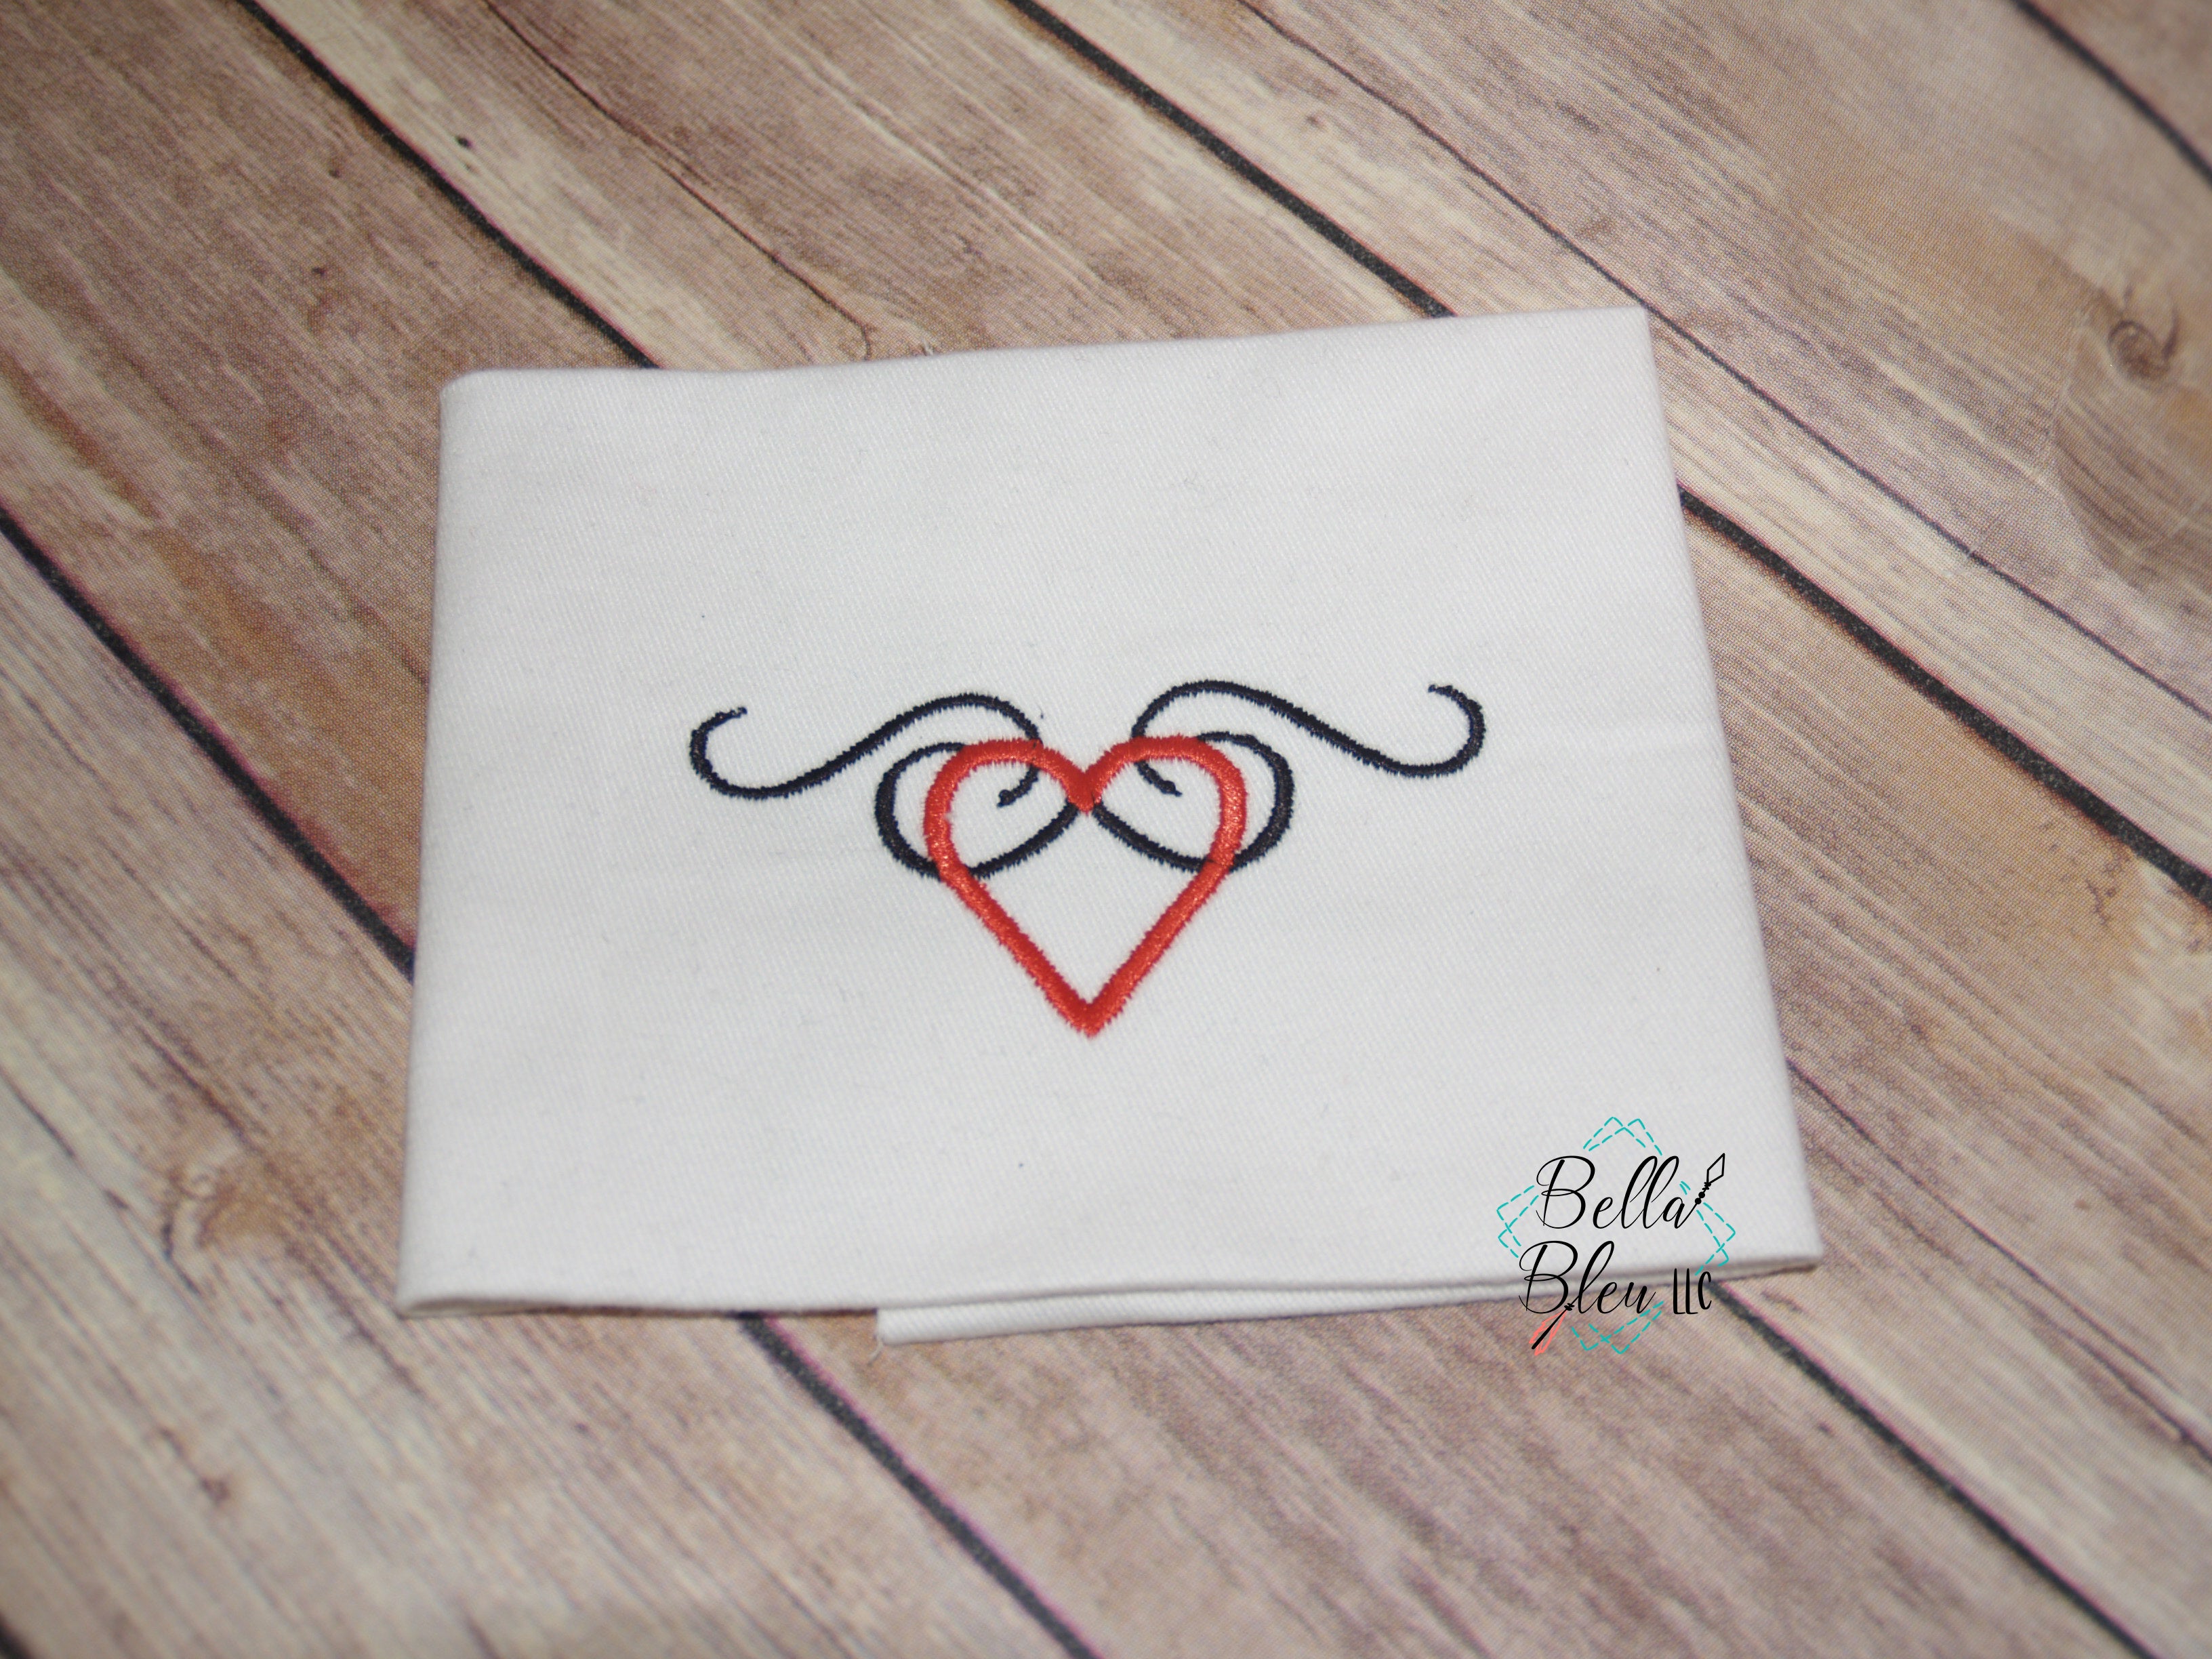 Heart E+S+C (Union) heartigram heart original tribal tattoo design